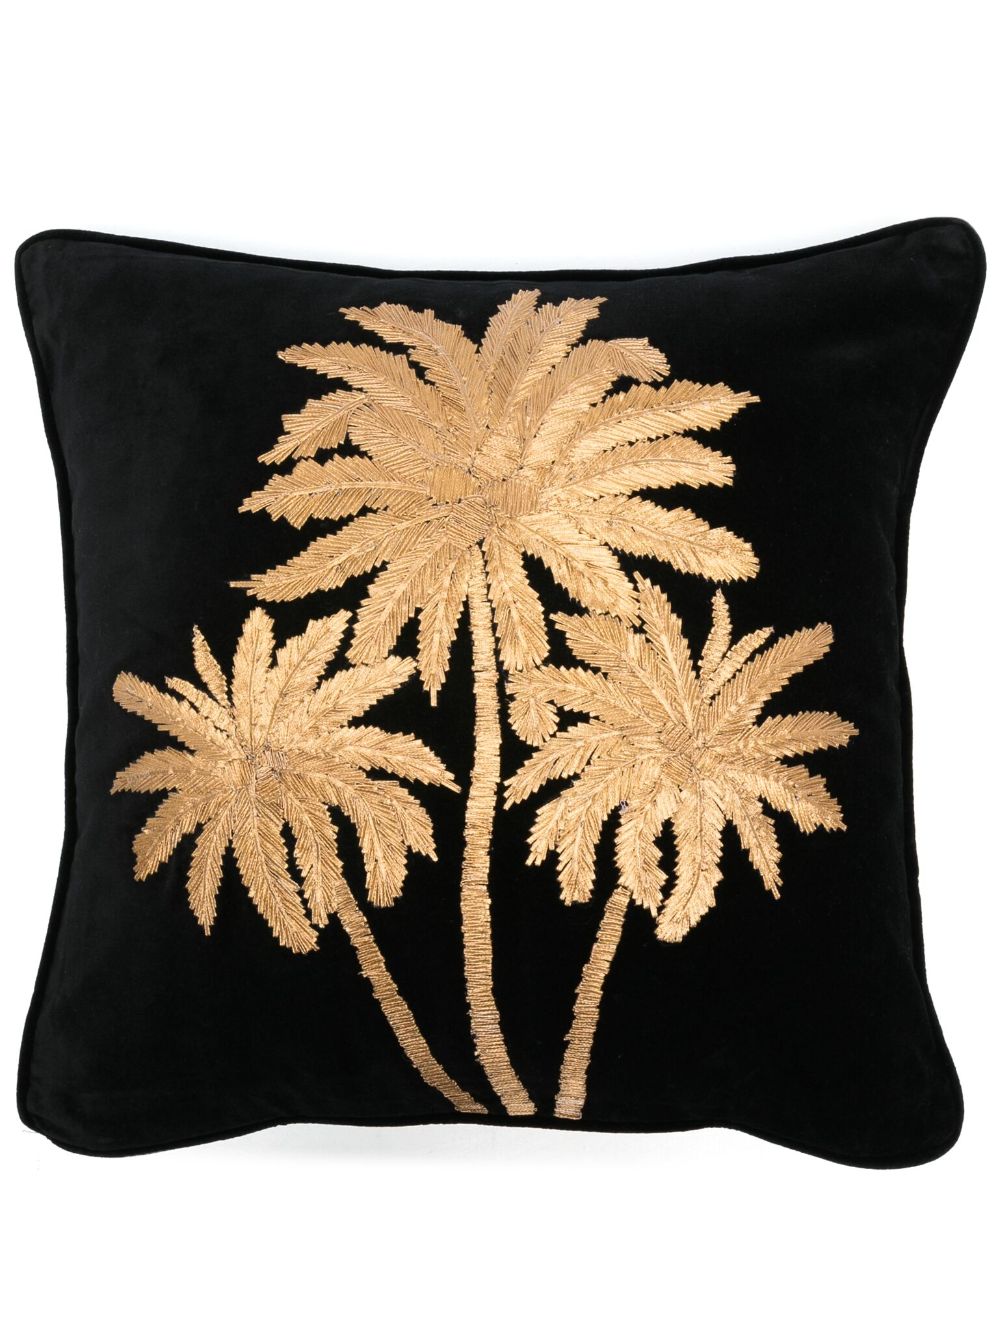 Les-Ottomans x Browns Embroidered Palms velvet cushion (45cm x 45cm) - Black von Les-Ottomans